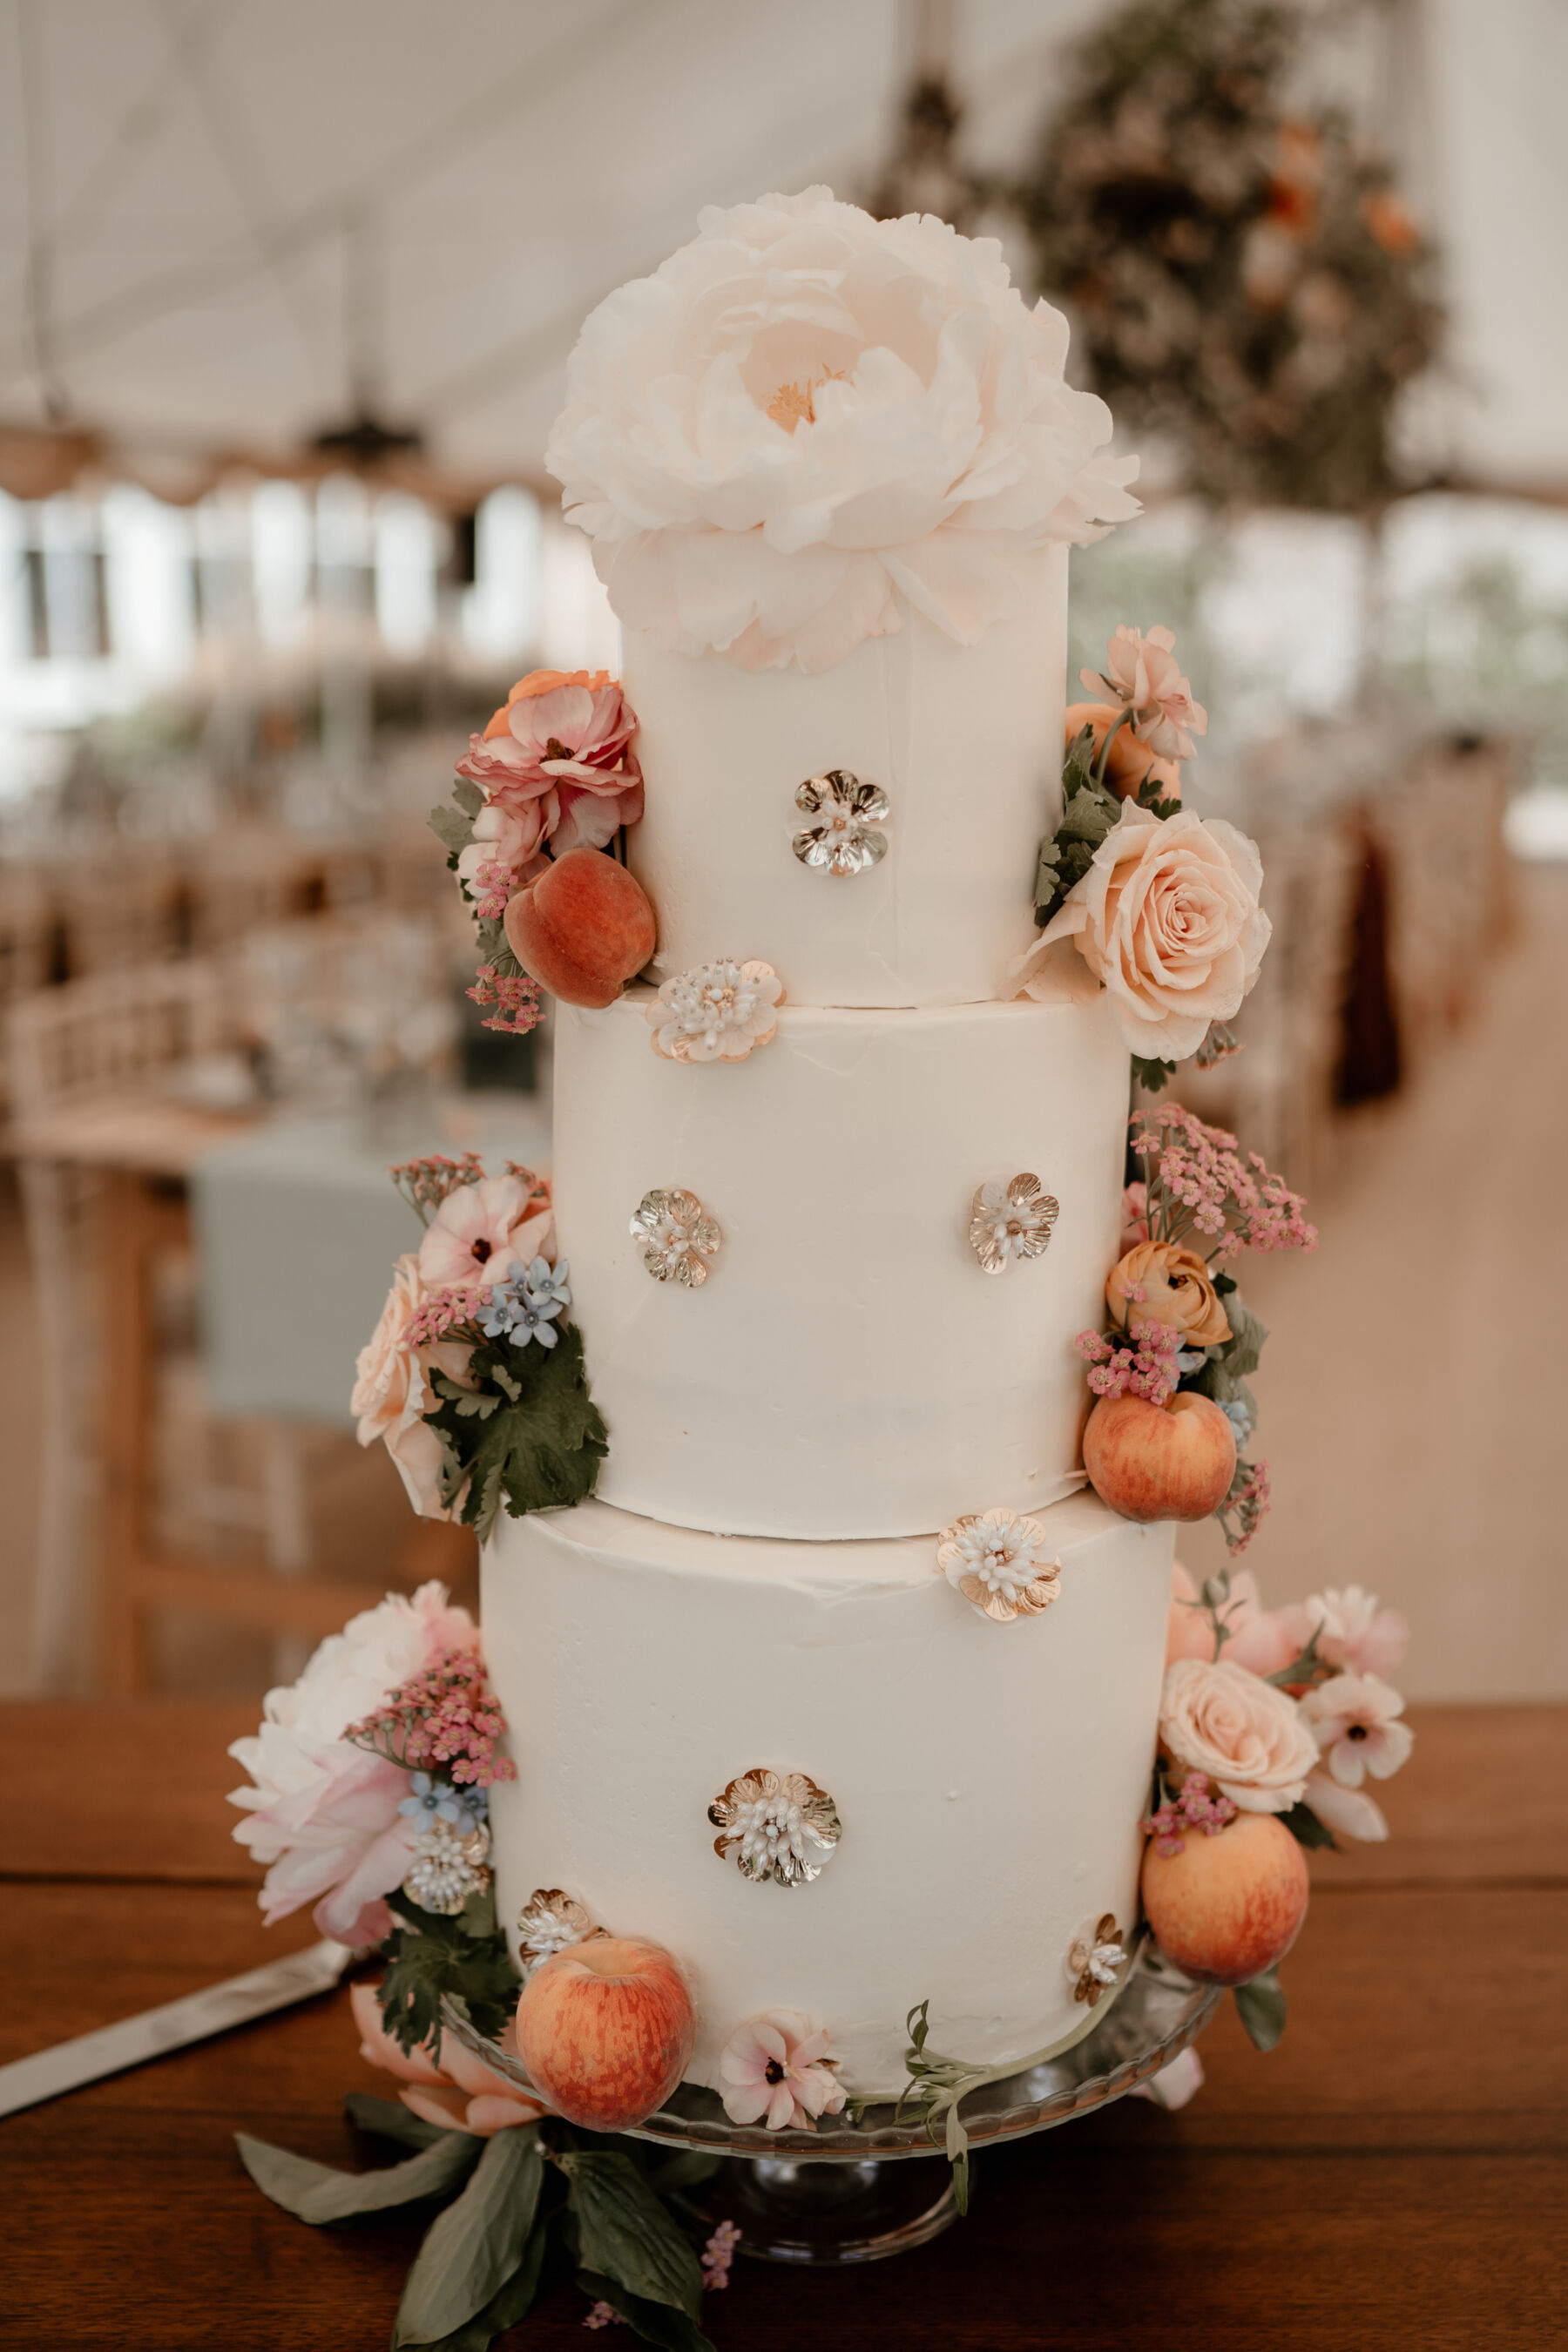 Elegant wedding cake by Isobel Cakes